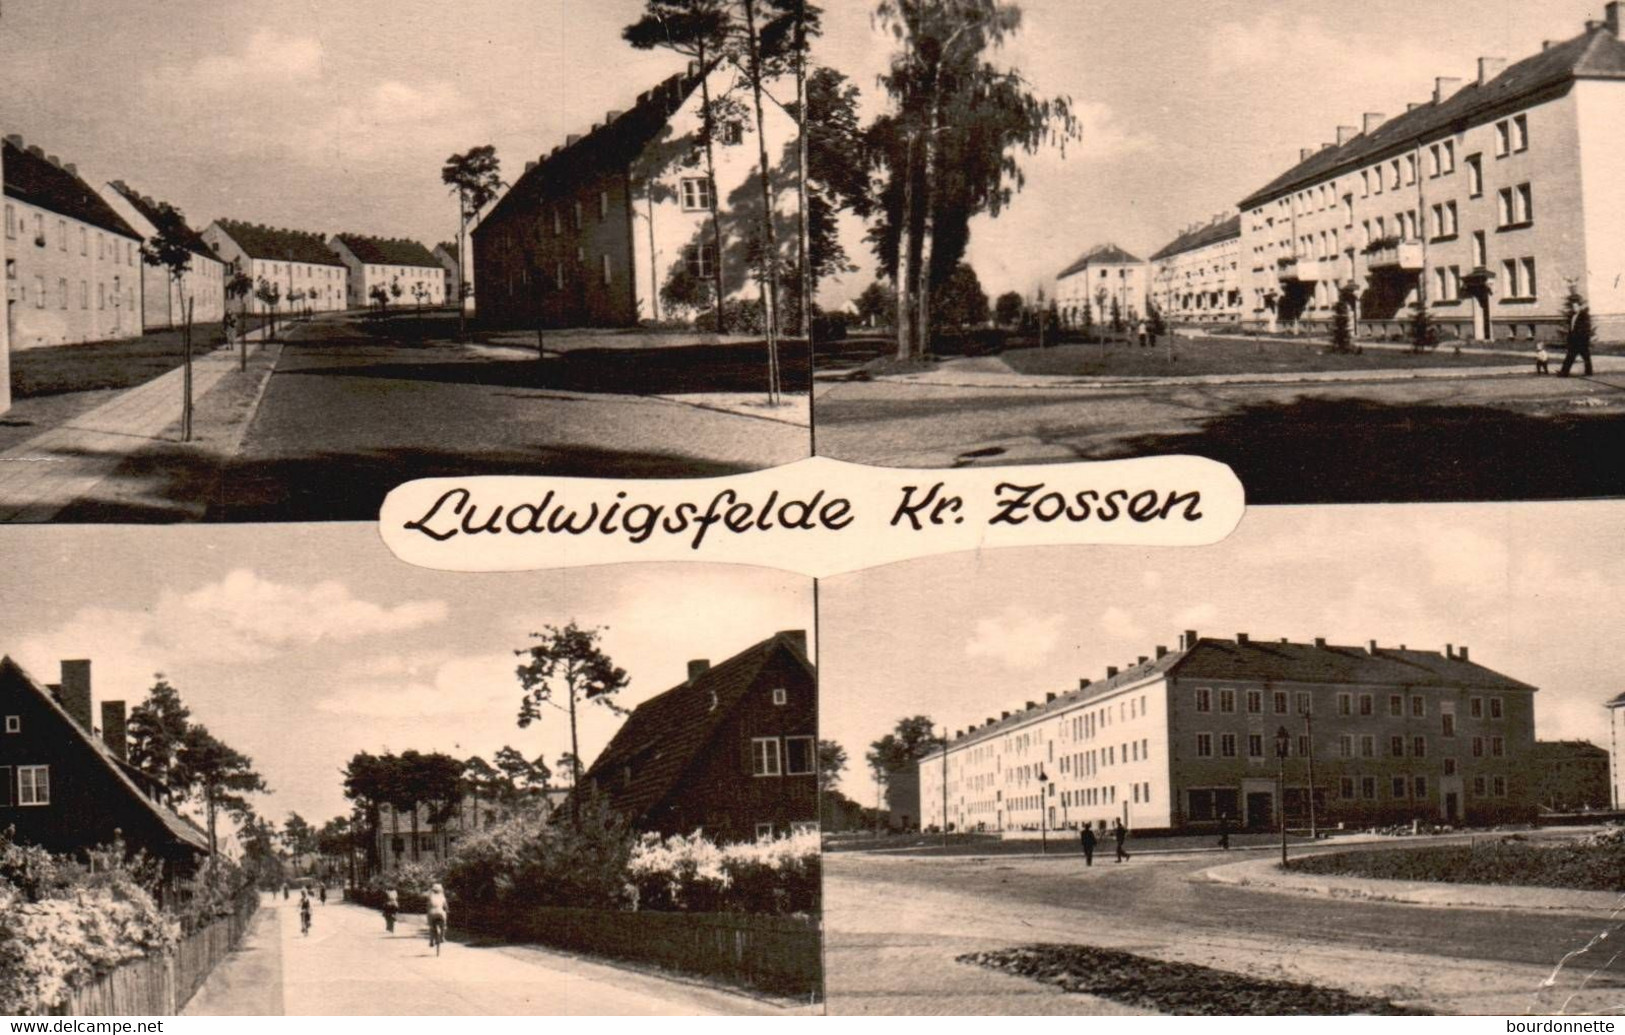 Ludwigsfelde Kr. Zossen 4-Bild-Foto - Ludwigsfelde